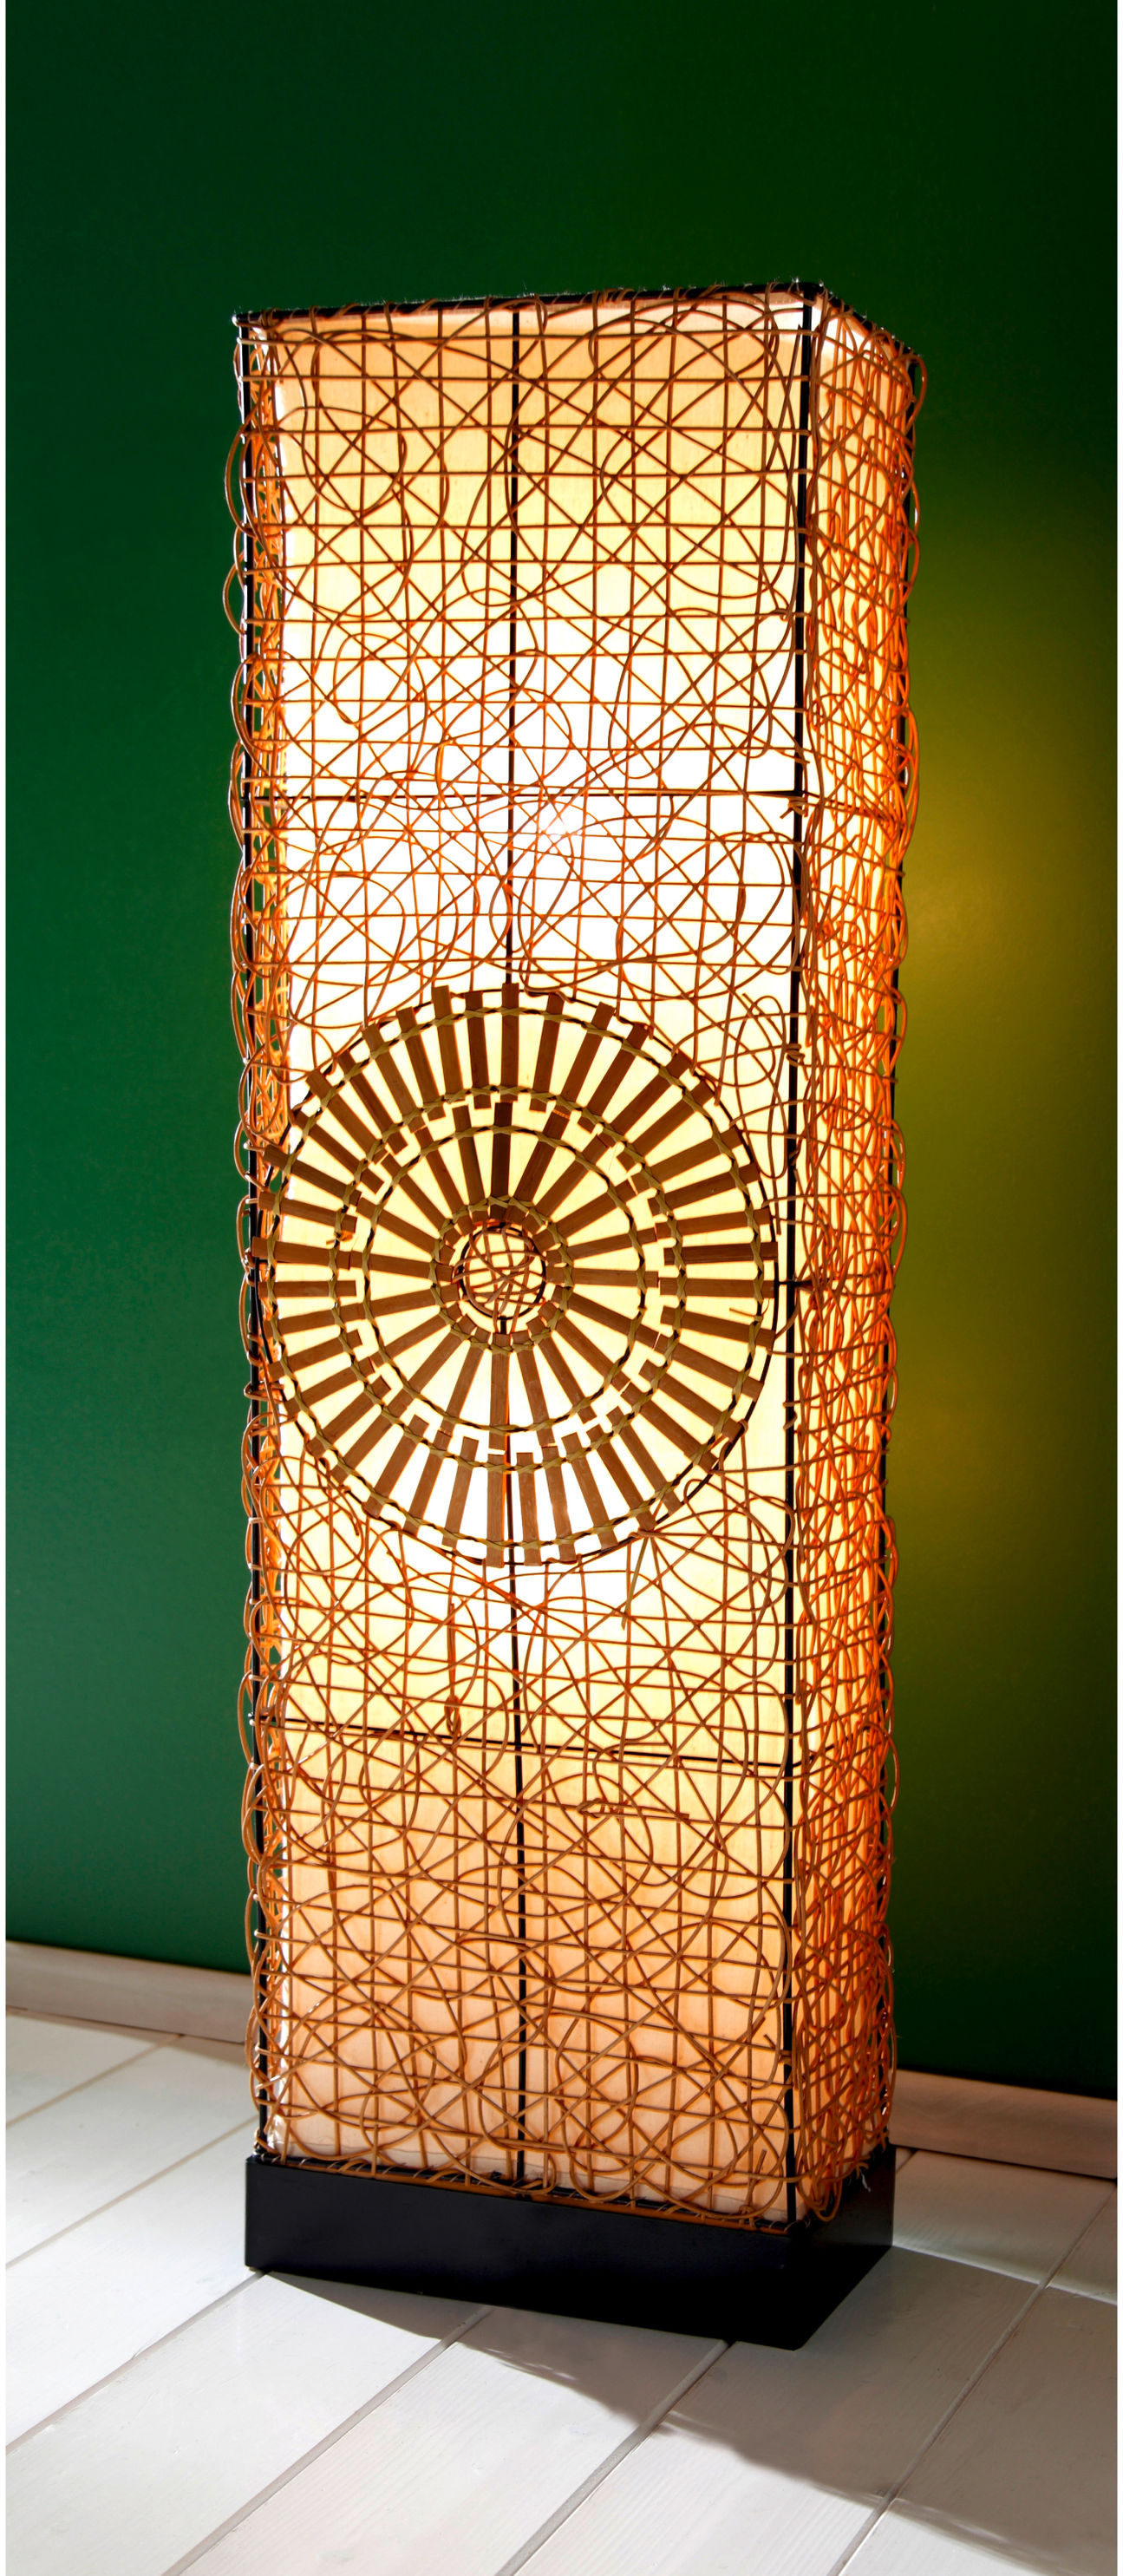 Stehlampe Bambus jetzt bei Weltbild.de bestellen